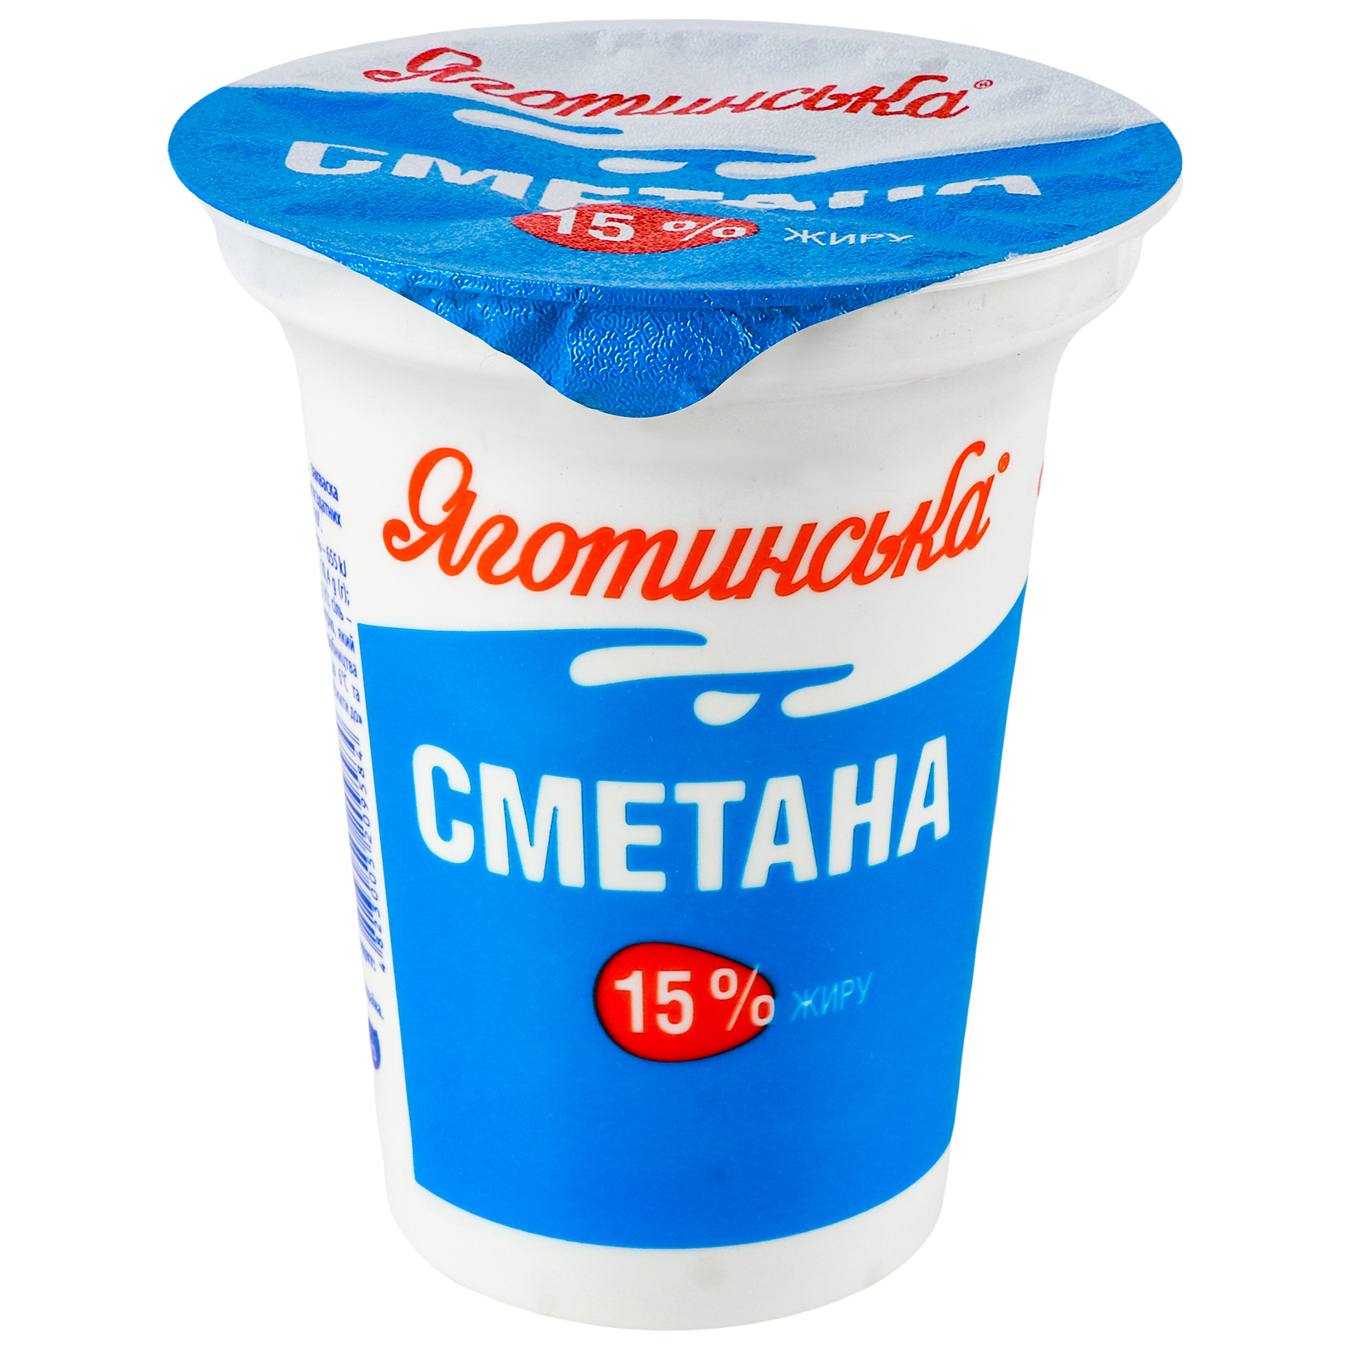 Yagotynske Sour cream 0,15 300g 2